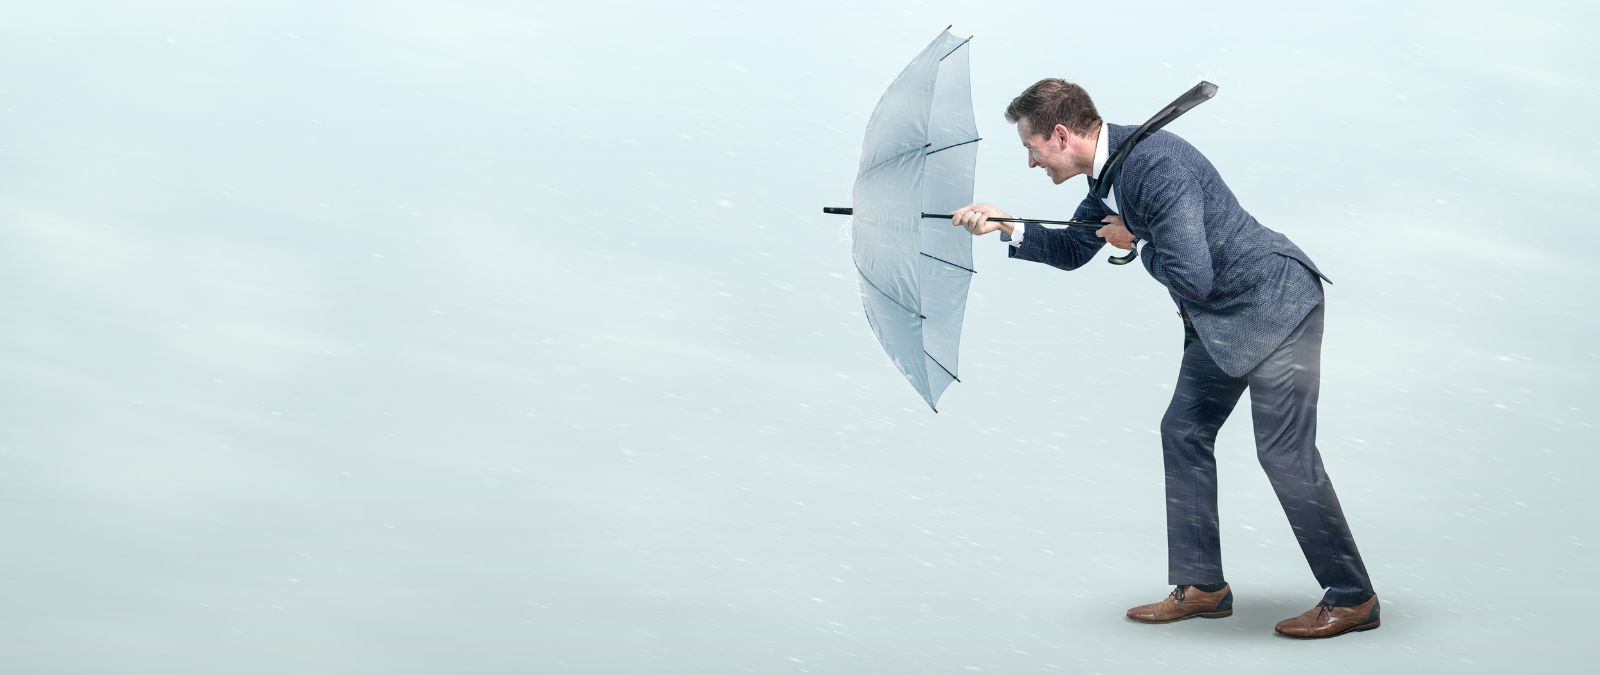 Schwierige Zeiten: Ein Mann im Anzug läuft mit einem Regenschirm, während eines Sturms.